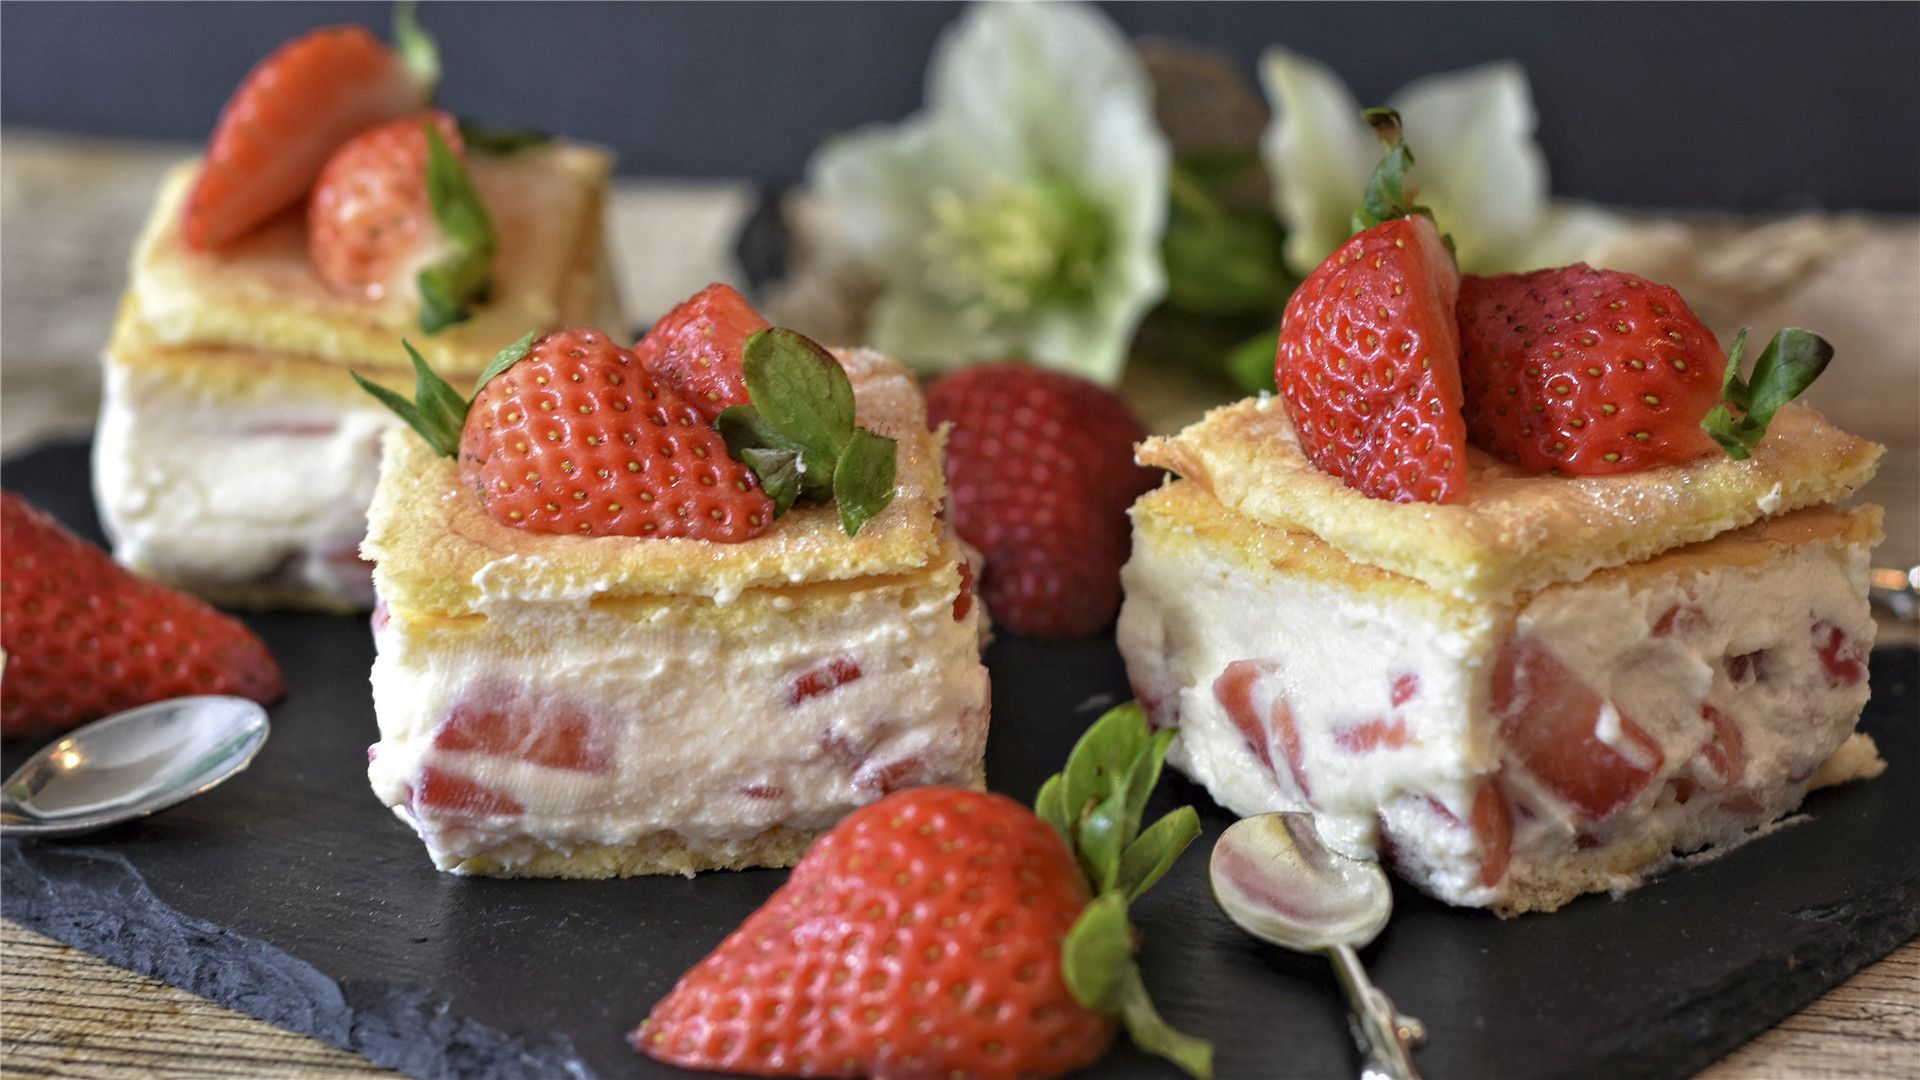 草莓水果蛋糕图片大全 草莓水果蛋糕图片网红